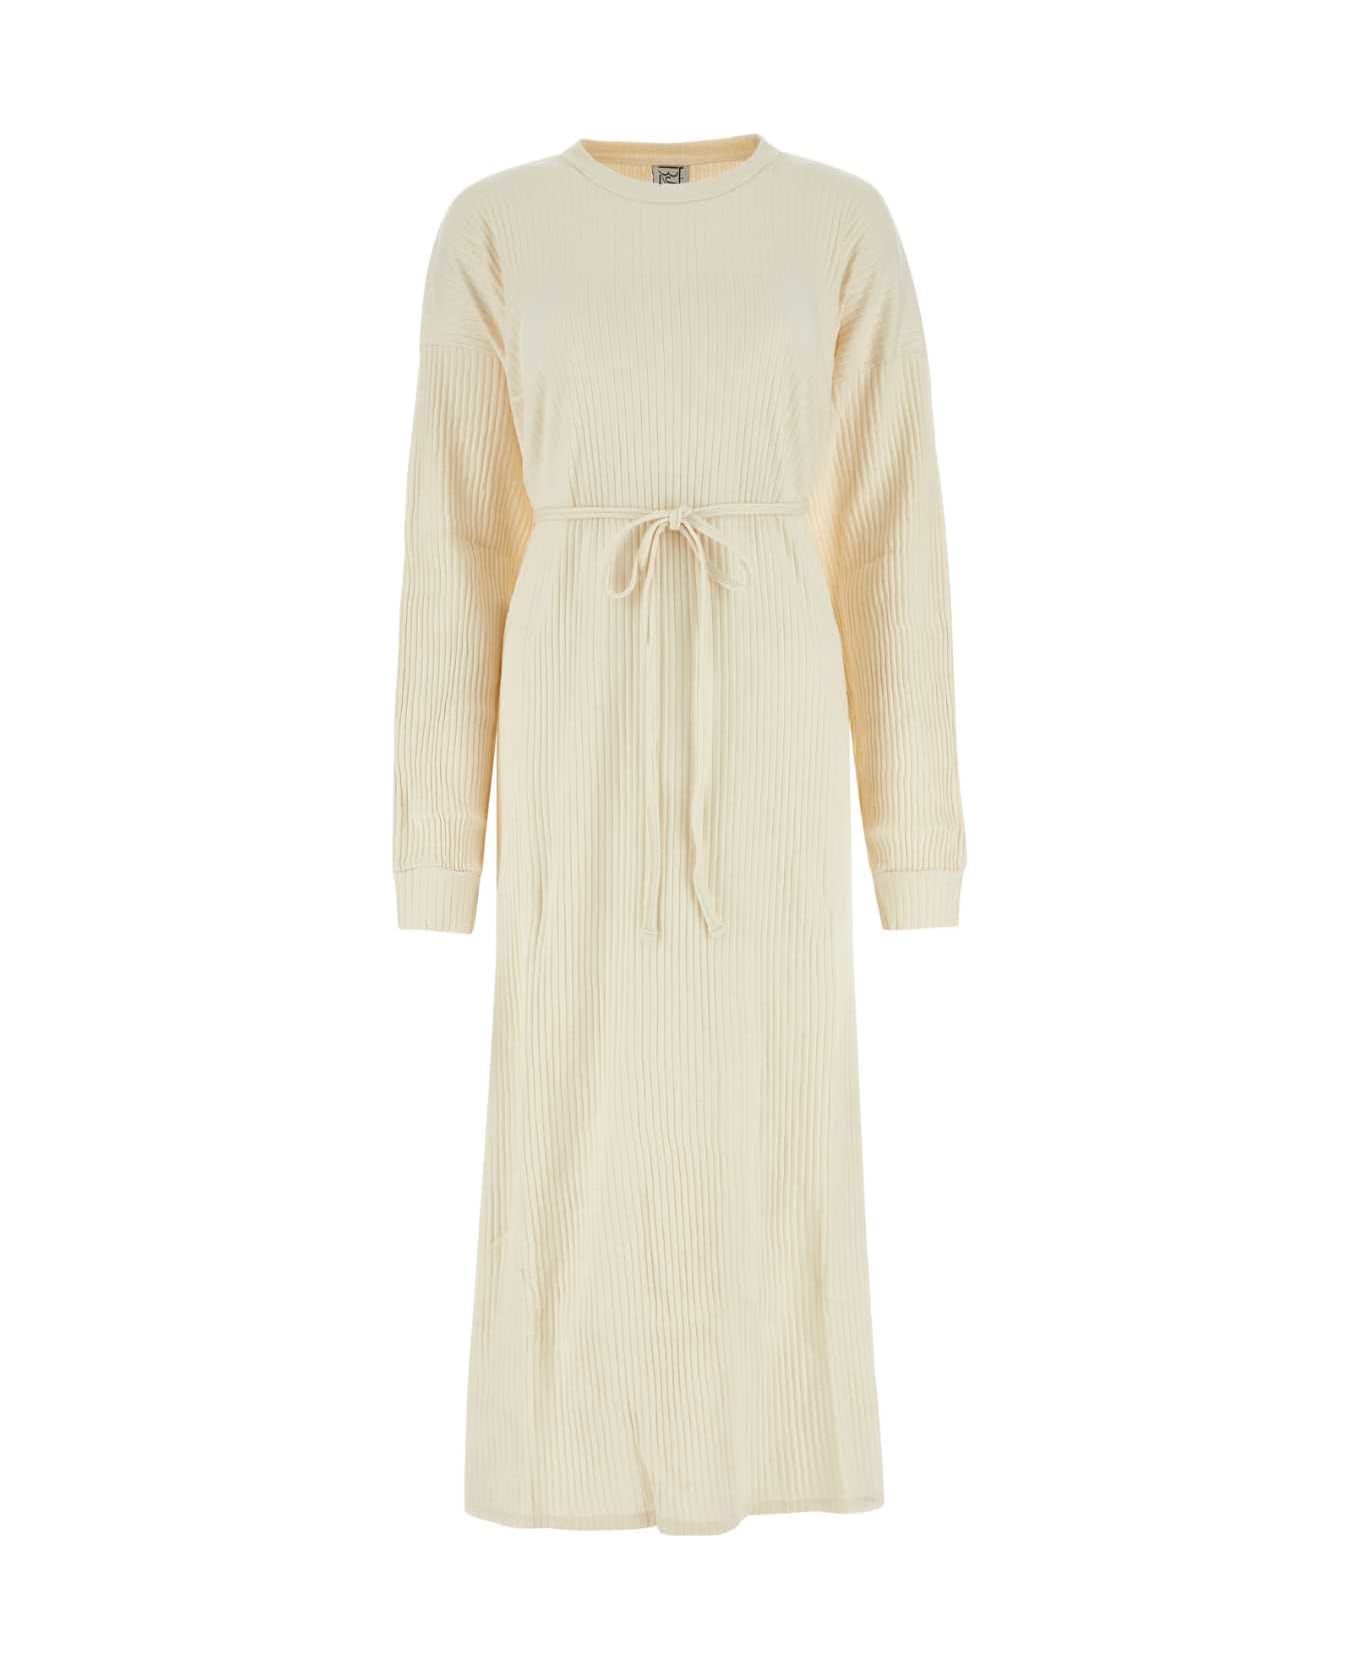 Baserange Ivory Cotton Dress - OFFWHITE